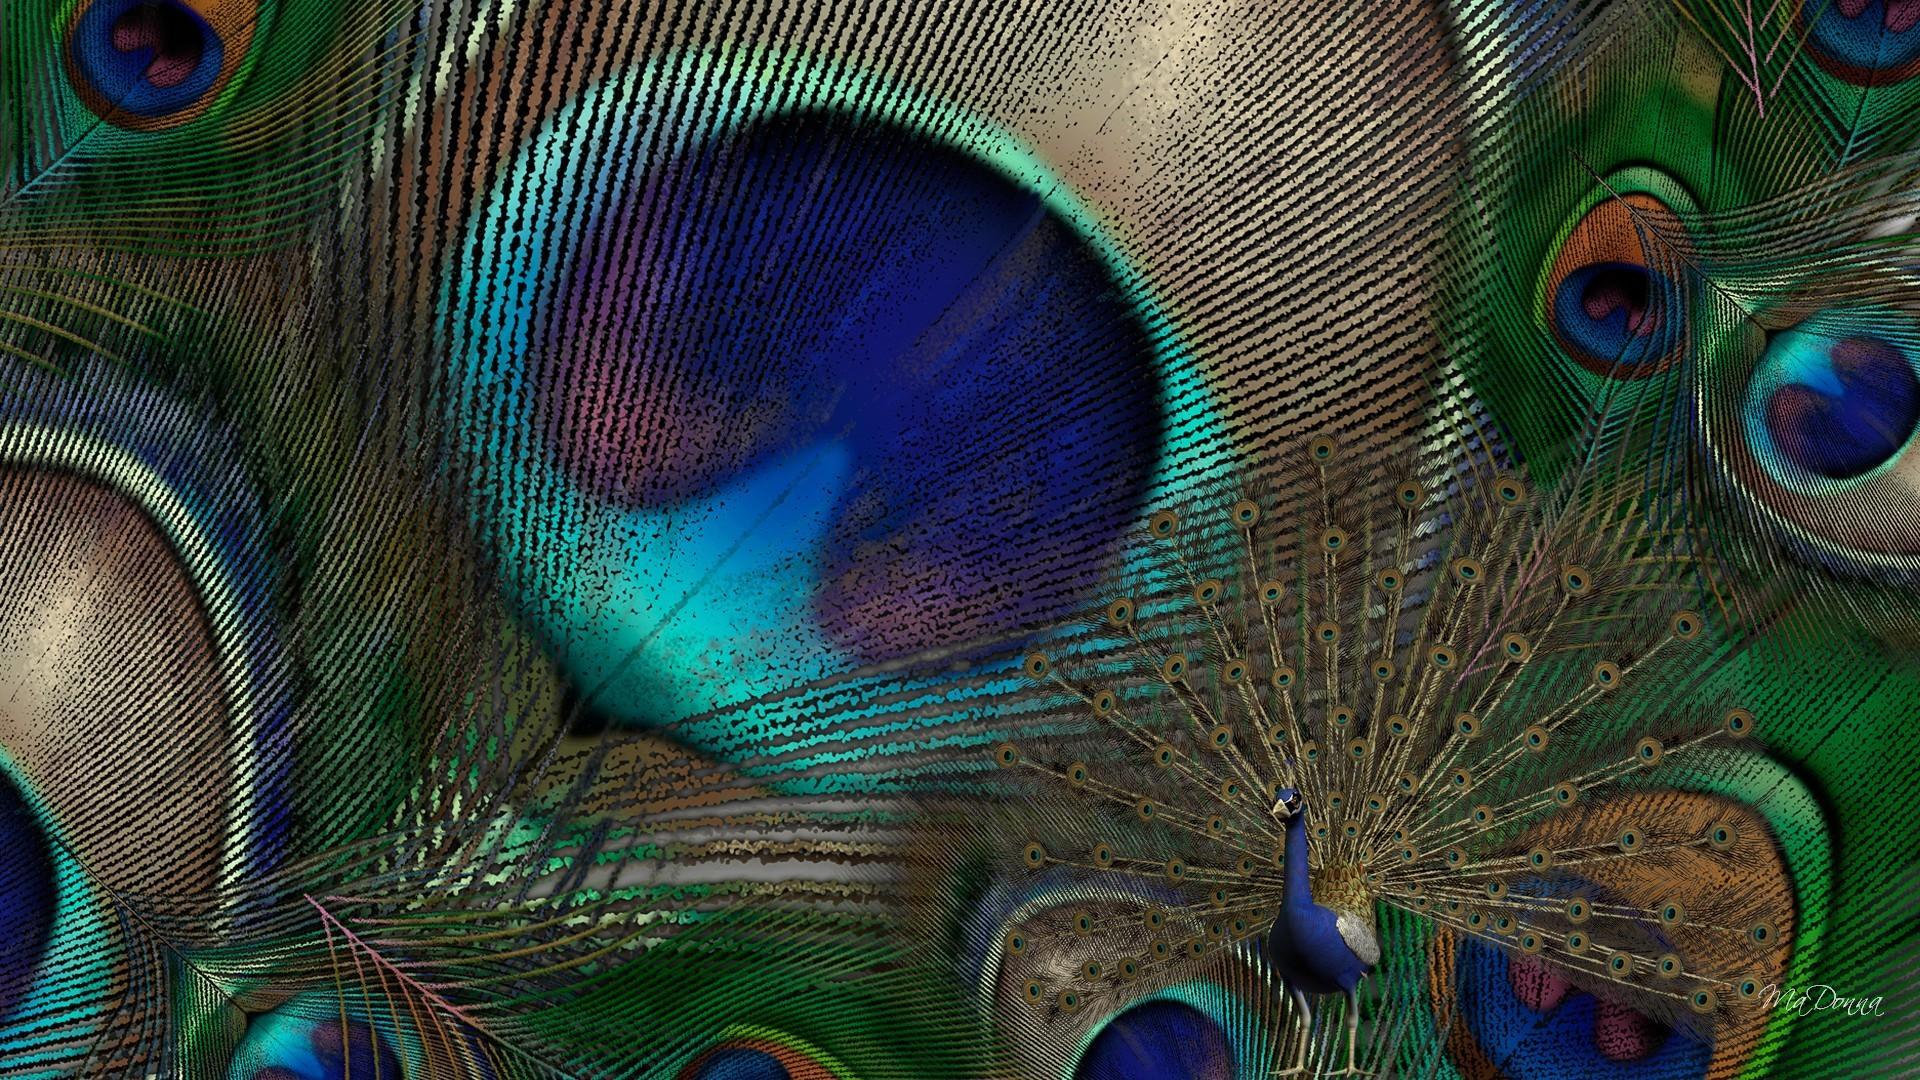 Hình nền HD 1920x1080 Peacock HD Hình ảnh tươi toàn màn hình - Hình nền máy tính Peacock Feather HD - 1920x1080 - Tải xuống Hình nền HD